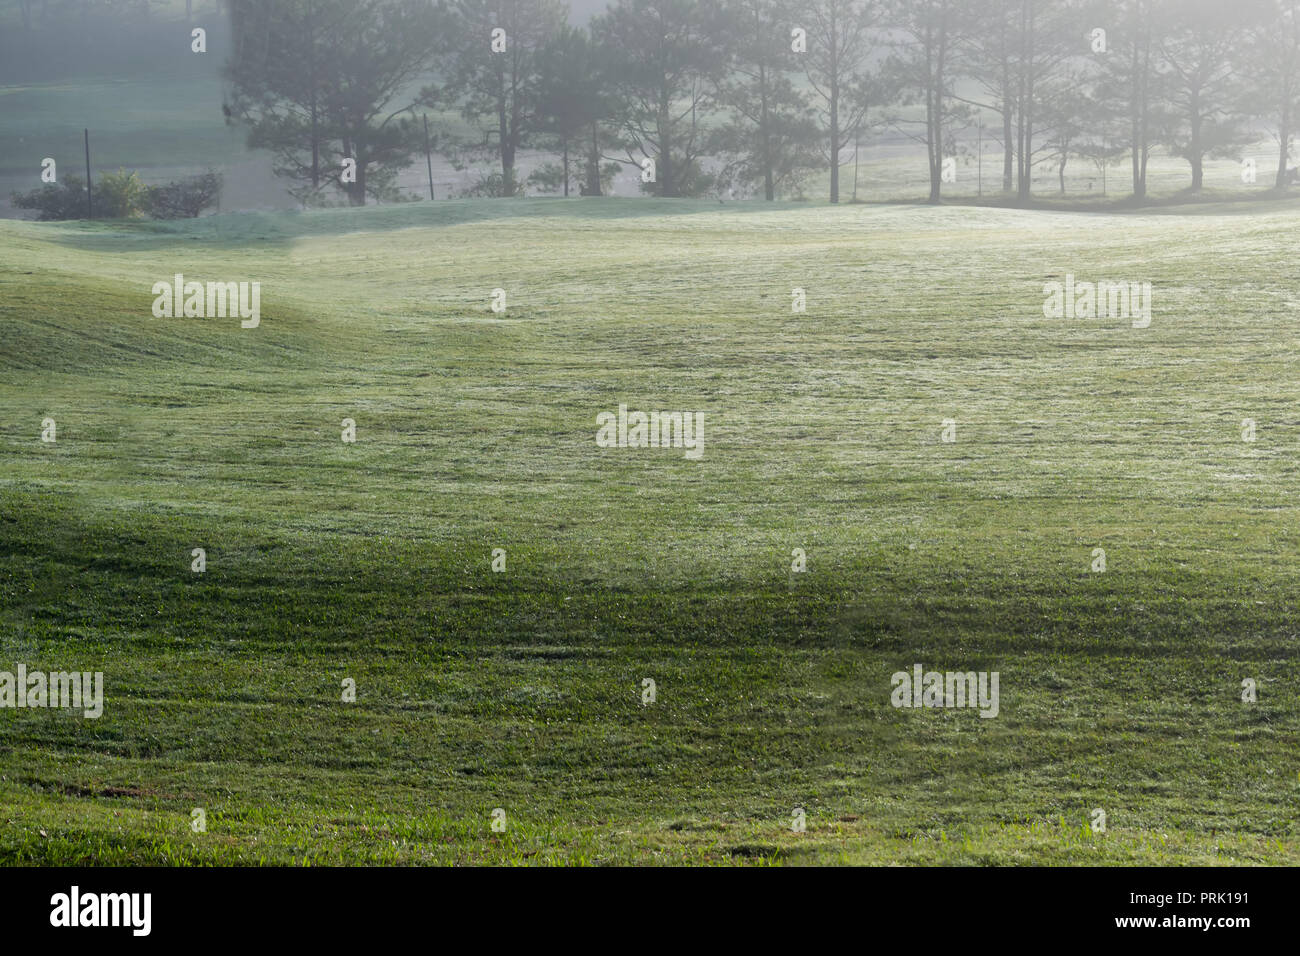 Hintergrund mit grüner Wiese und gelbe Sonnenlicht, Nebel Abdeckung Gras Hügel. Fotos im Golf Course Design Ideen, Travel, Werbung Stockfoto